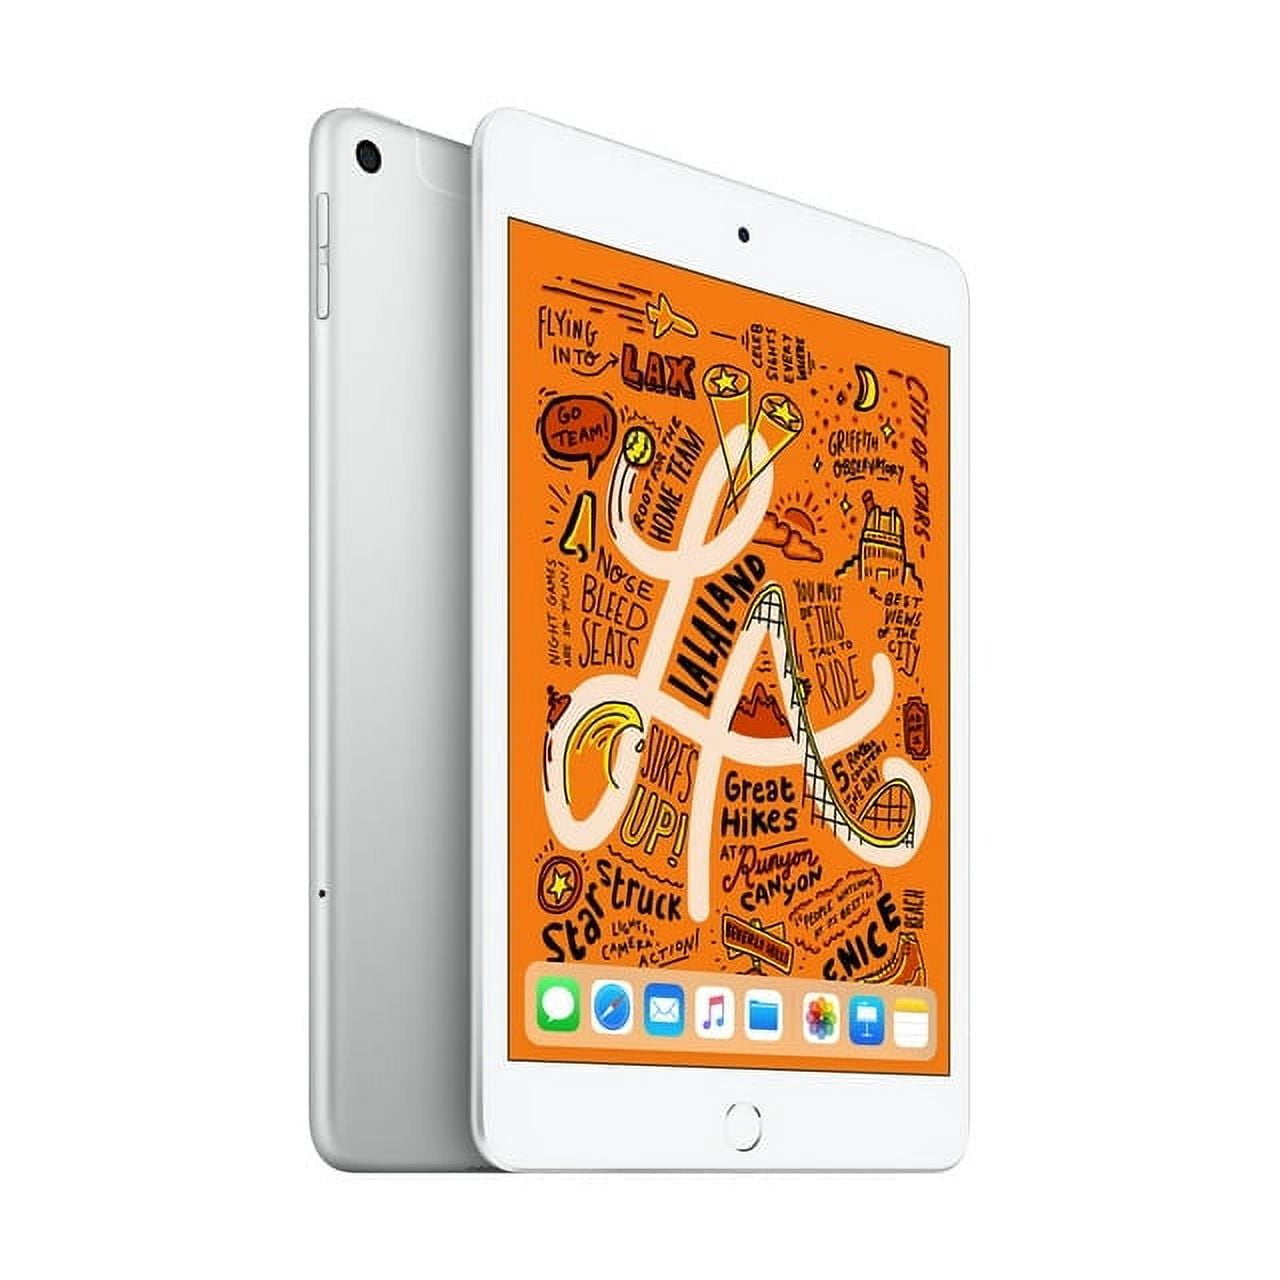 2019 Apple iPad Mini Wi-Fi + Cellular 64GB Space Gray (5th 